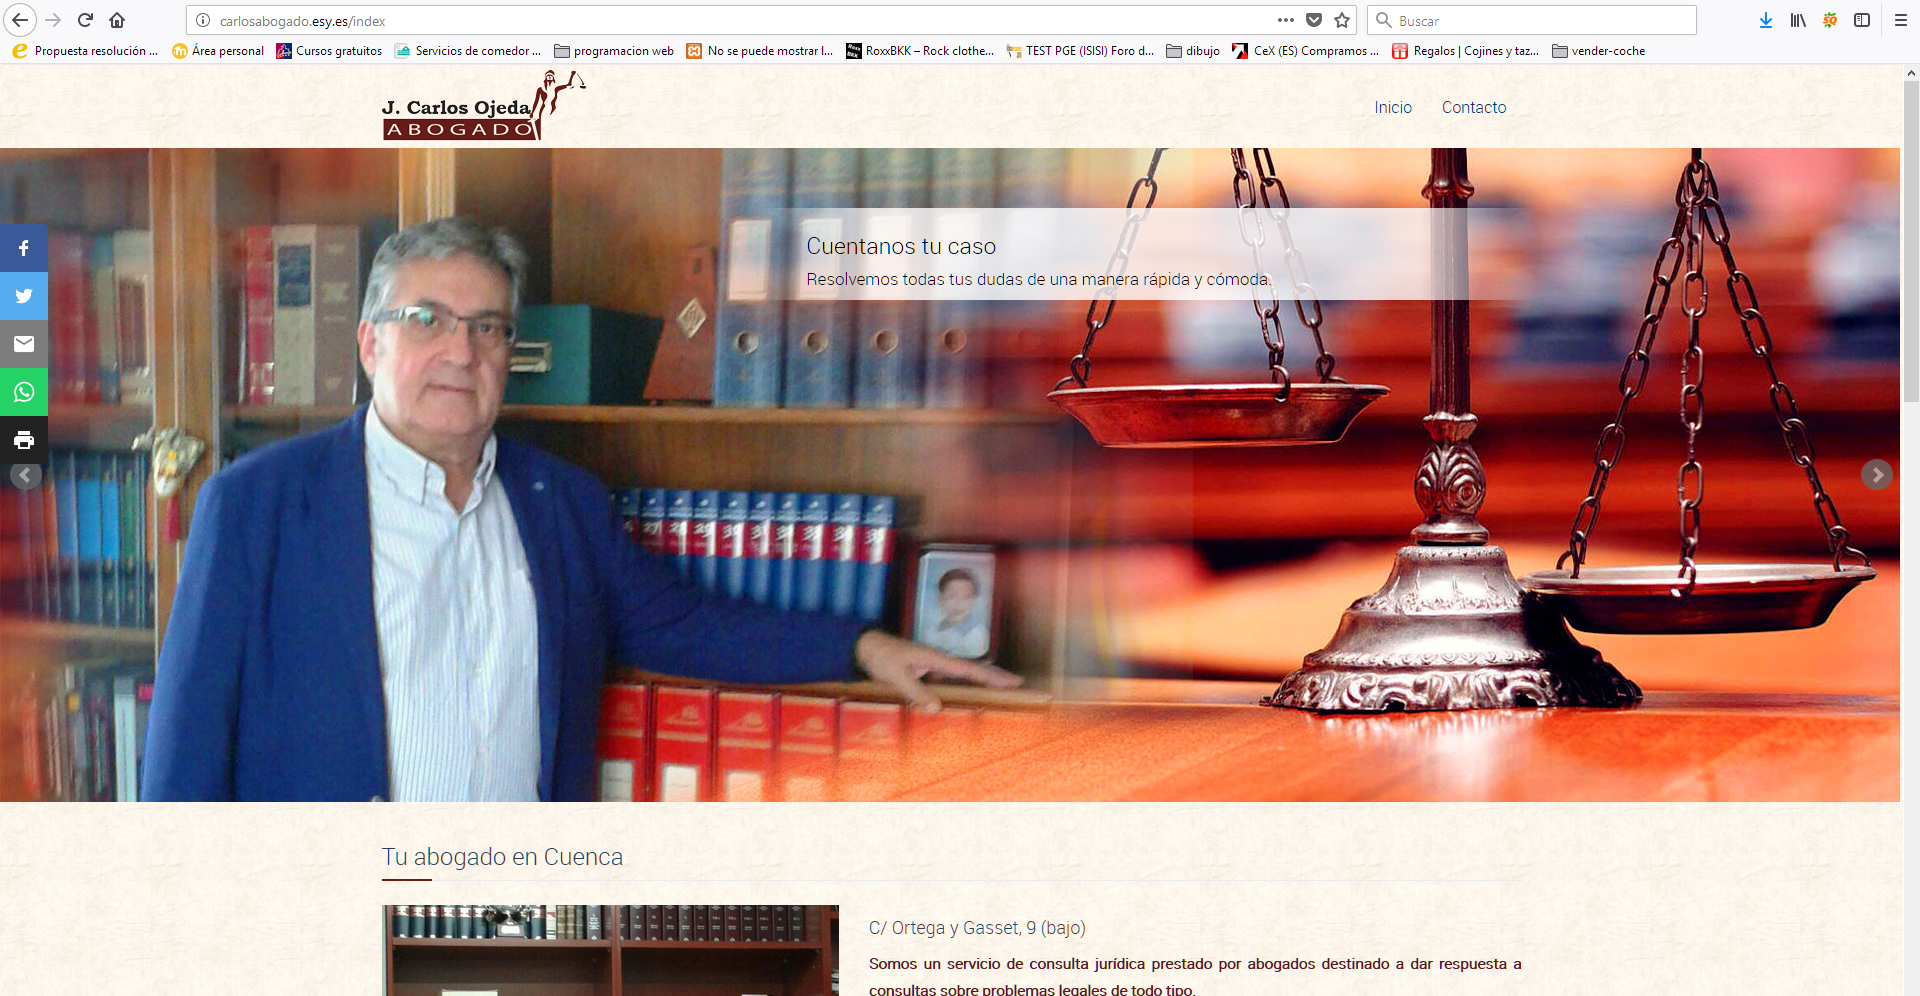 Página web del abogado de Cuenca J. Carlos Ojeda.